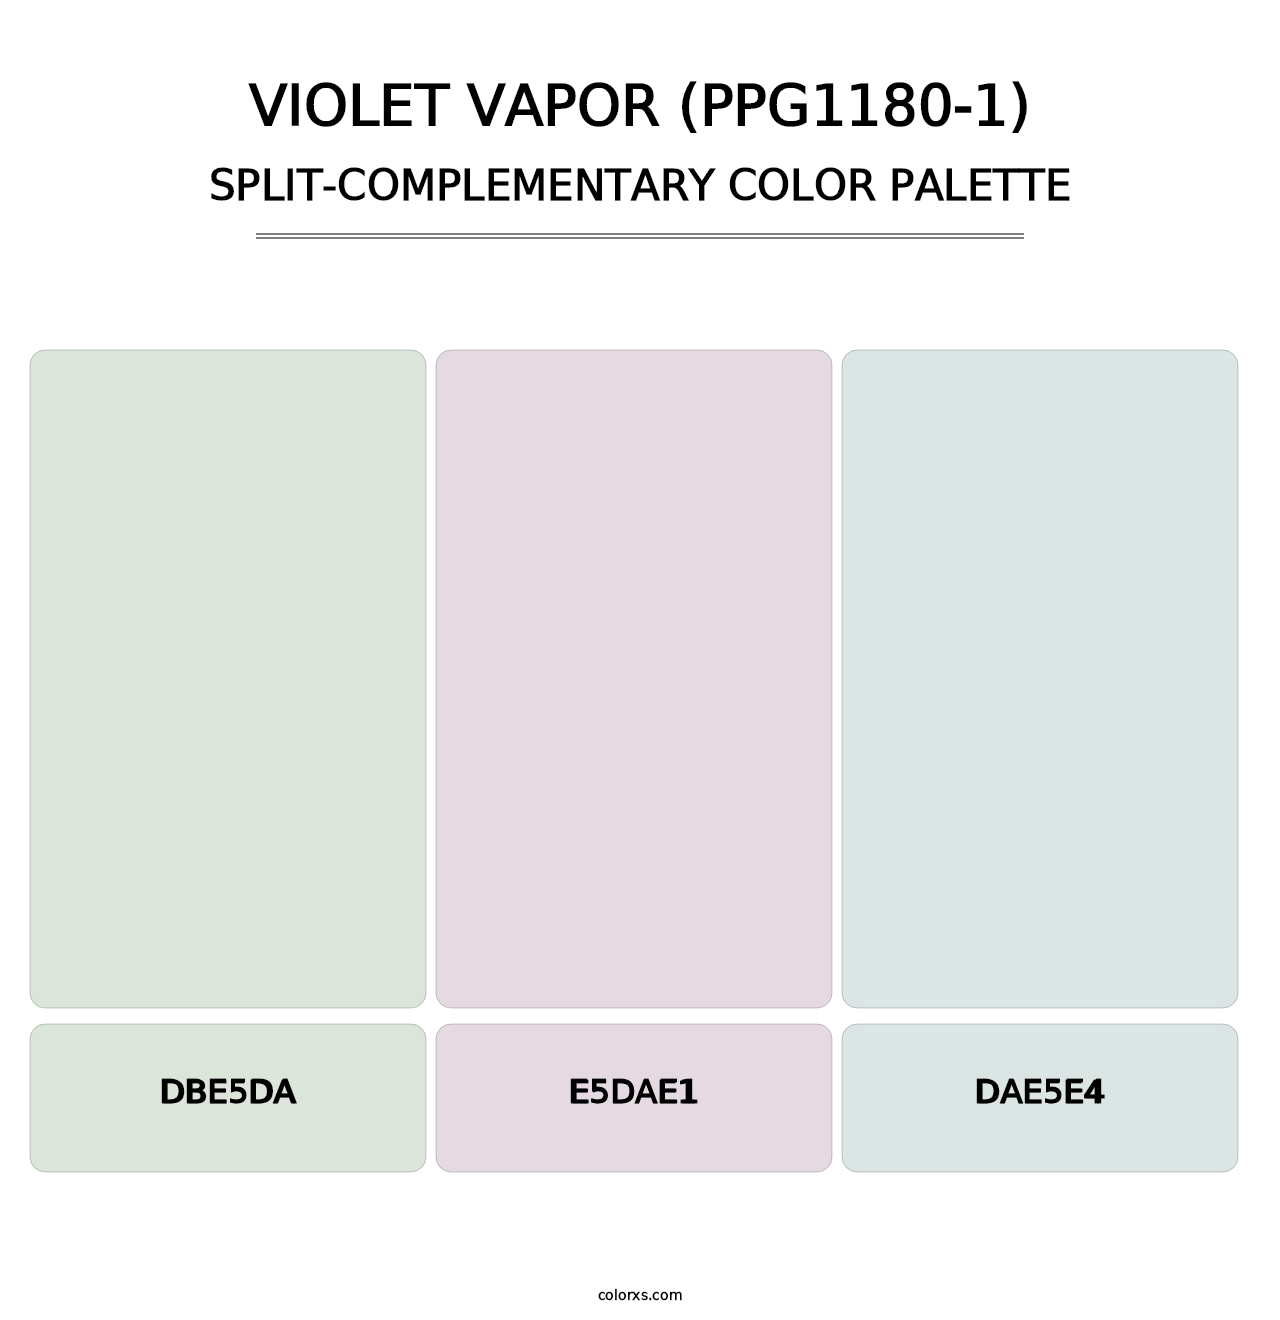 Violet Vapor (PPG1180-1) - Split-Complementary Color Palette